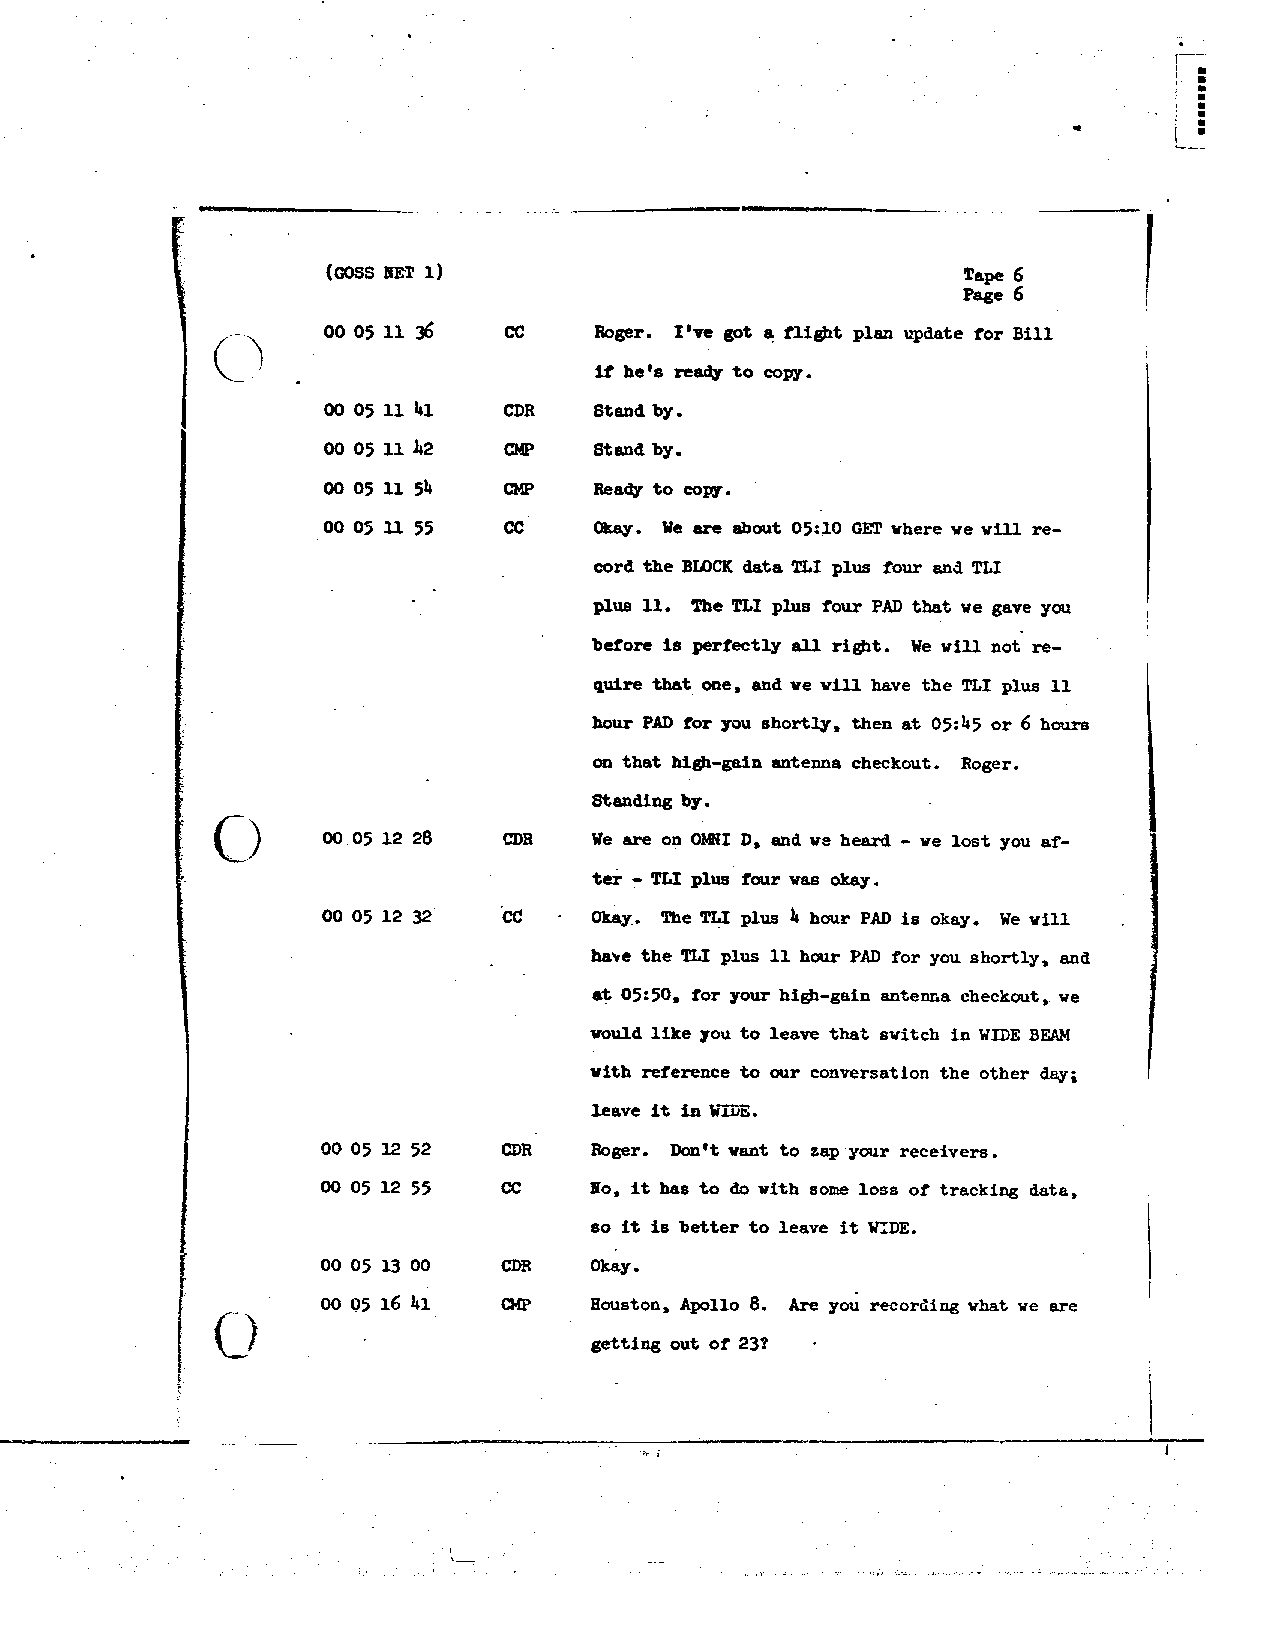 Page 52 of Apollo 8’s original transcript